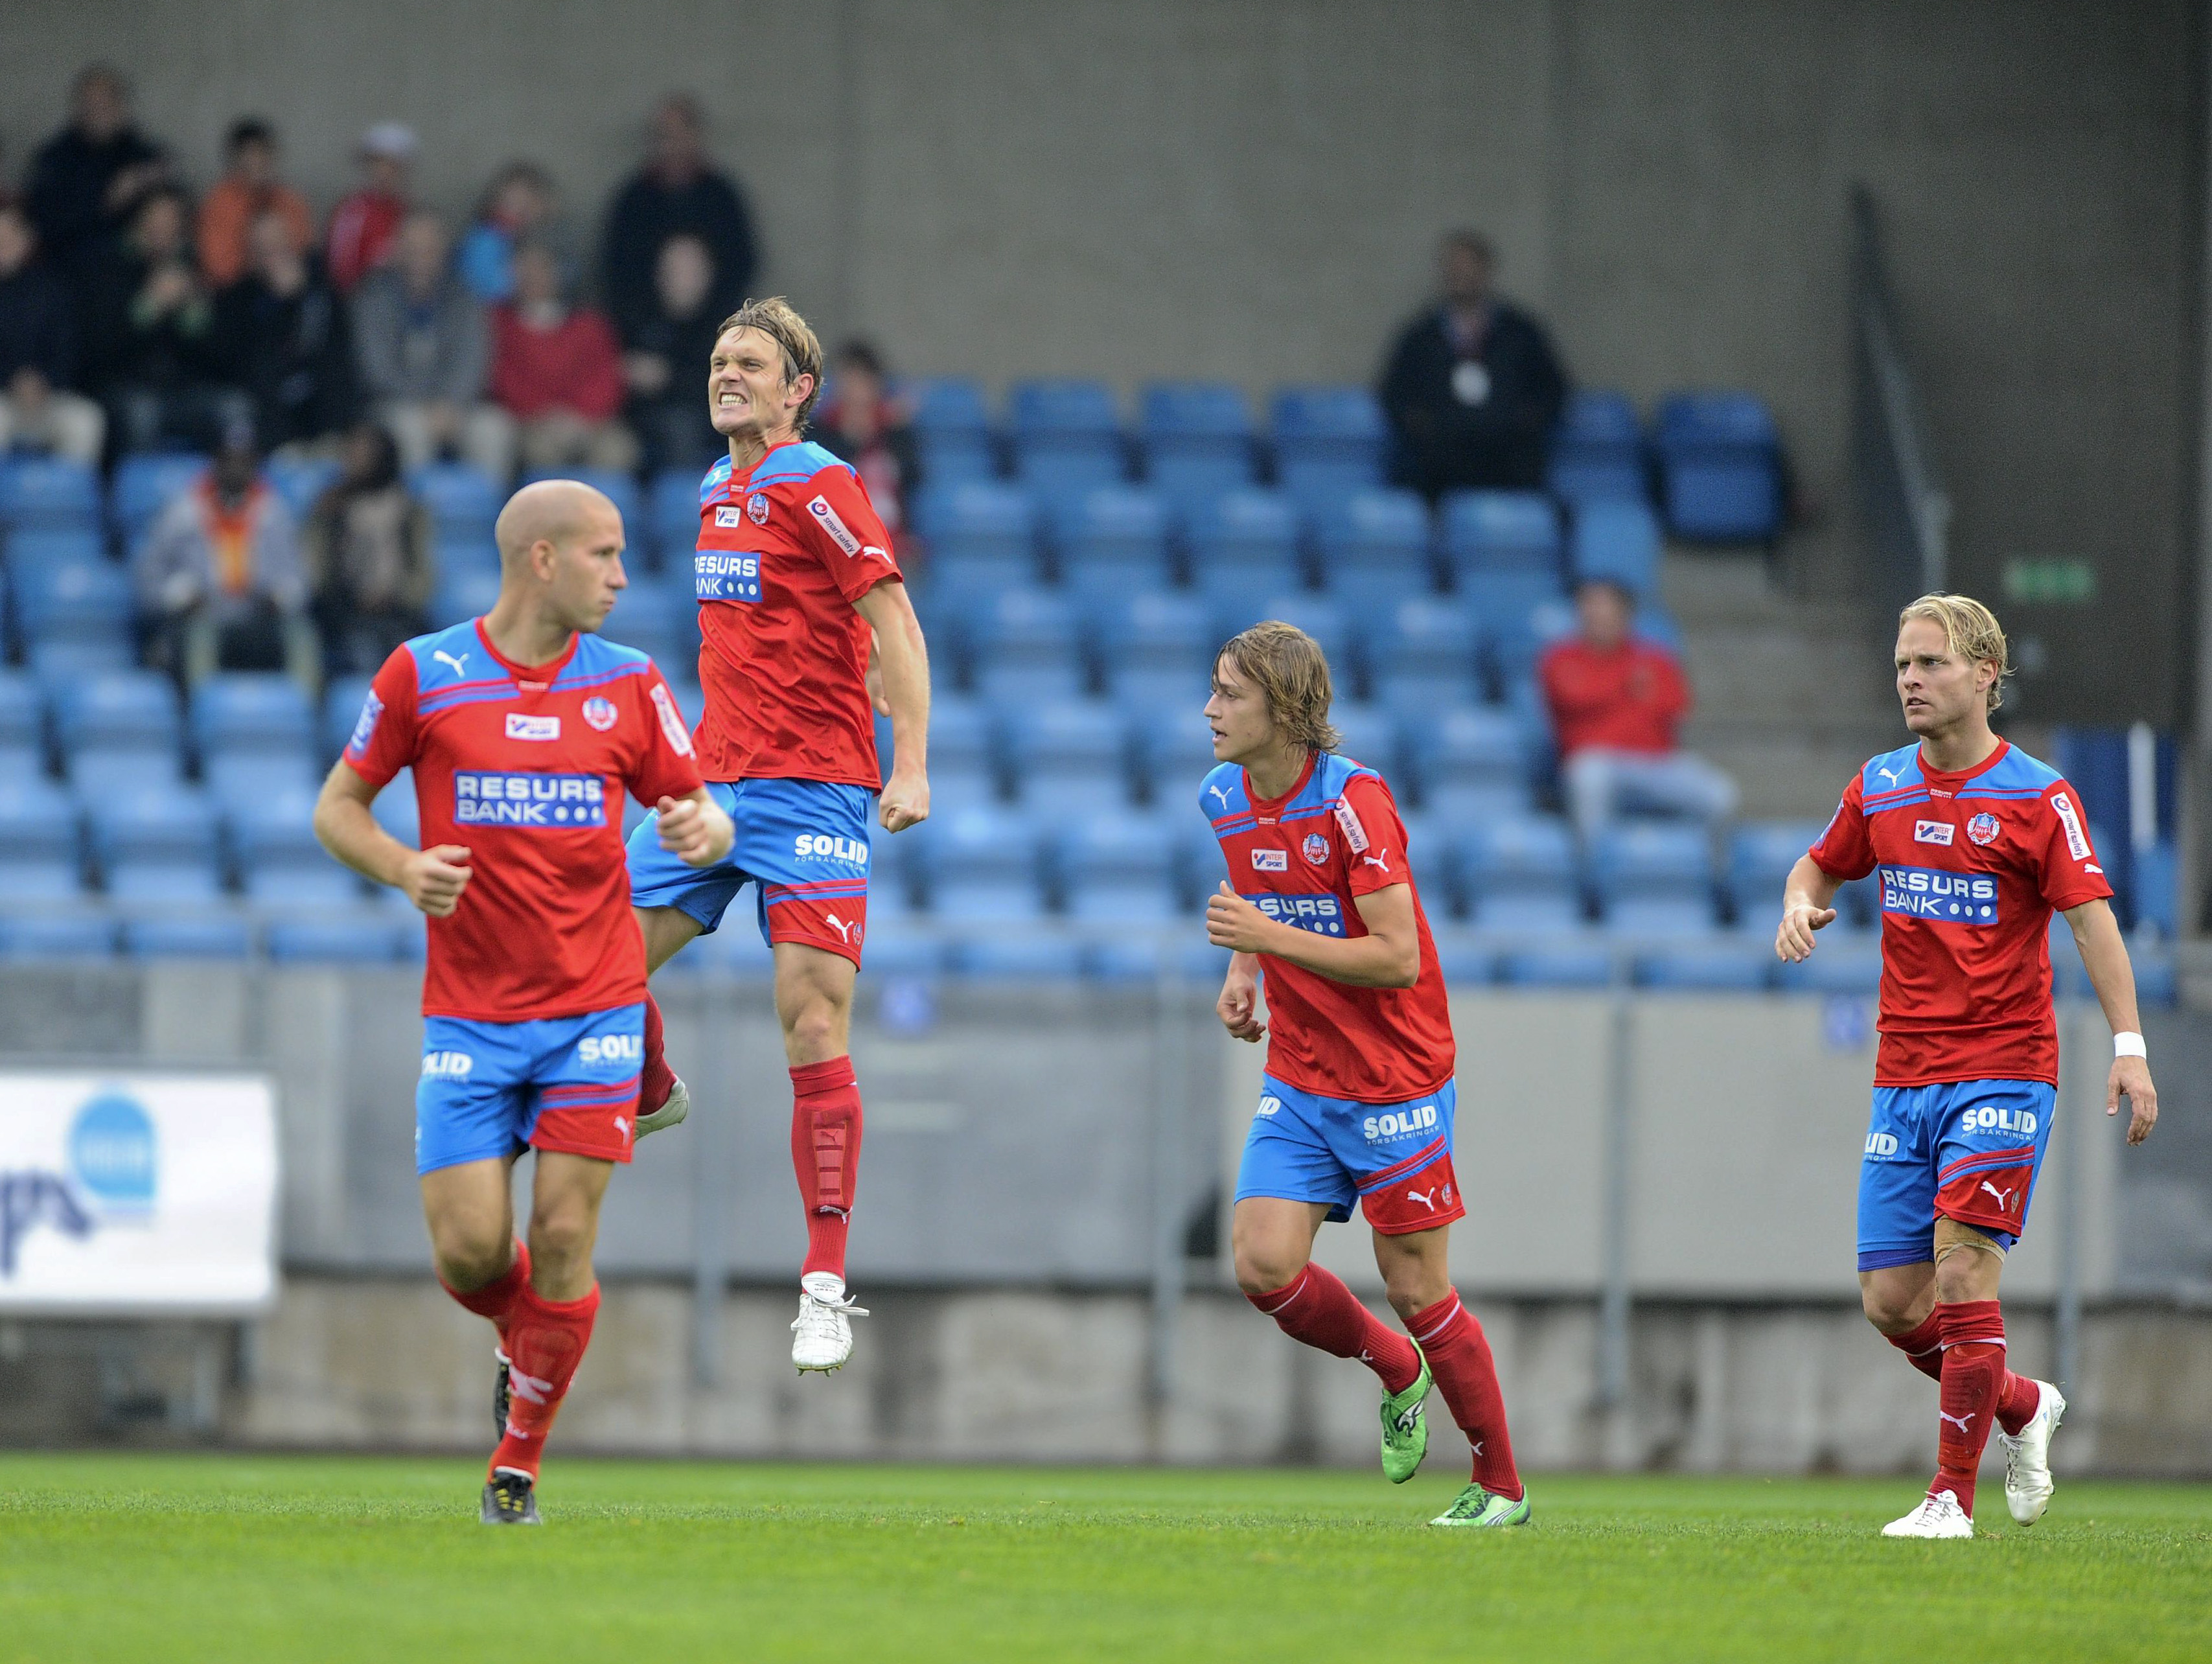 Thomas Sörum avgjorde för Helsingborg: "Jag behövde ett mål och fick det."